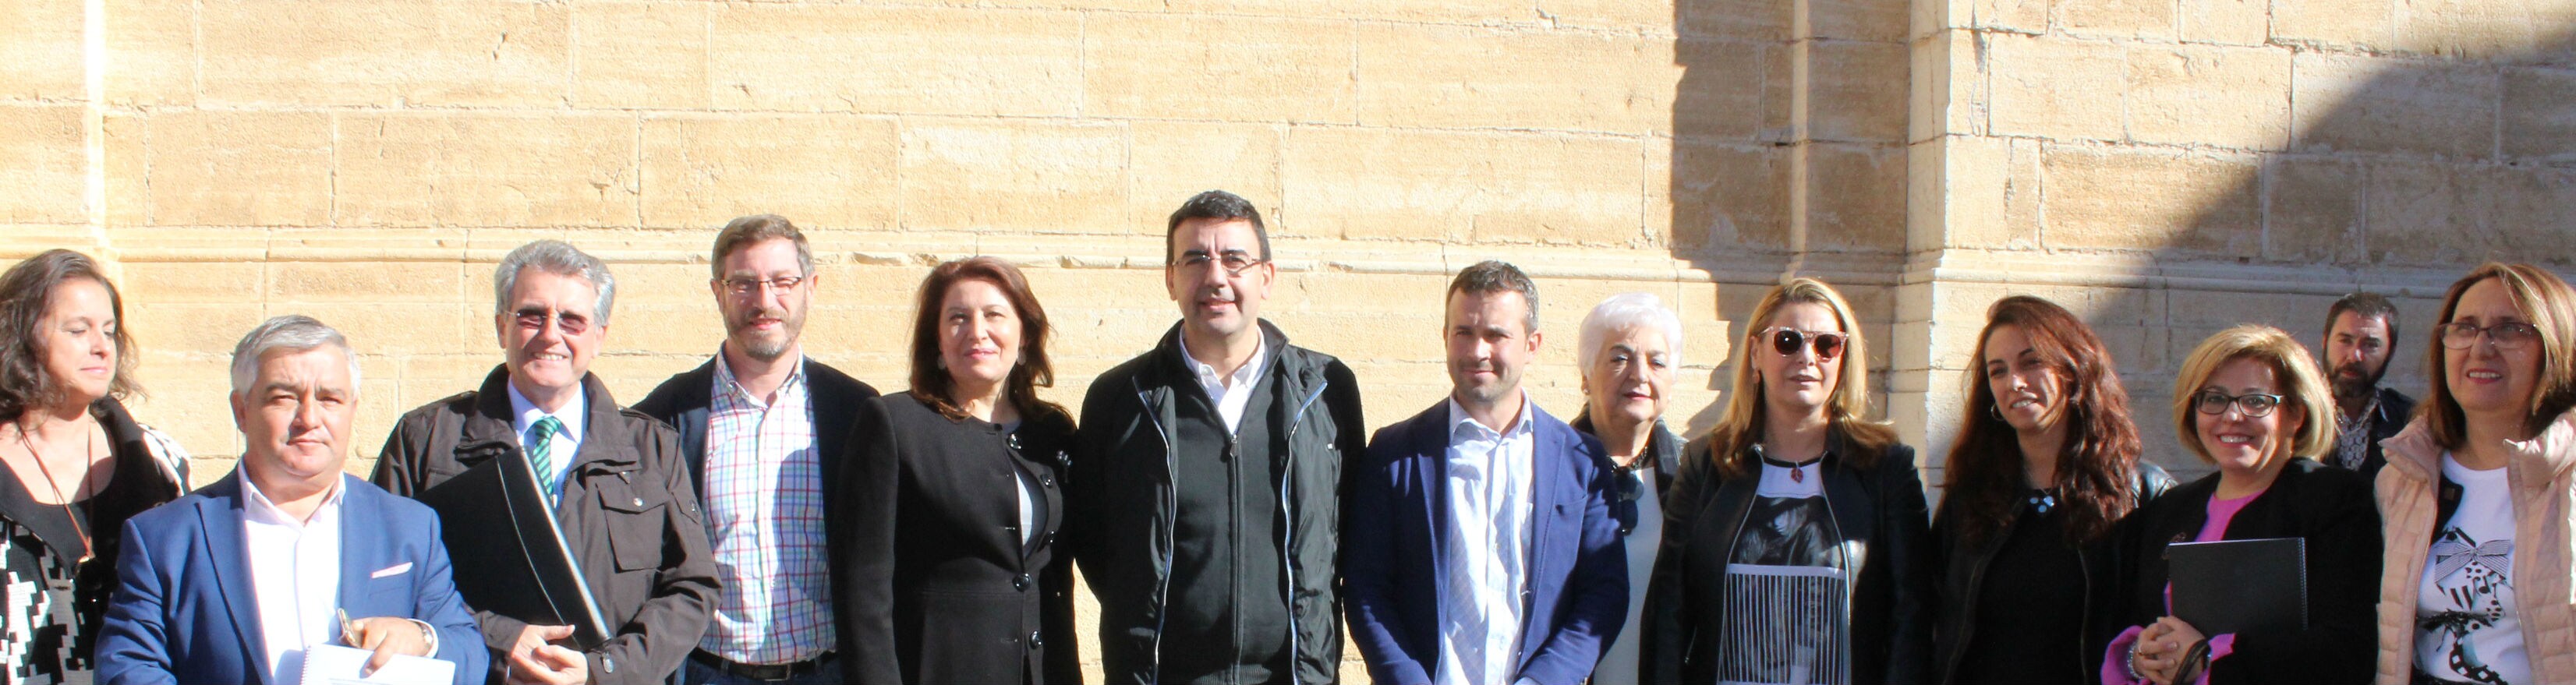 Portavoces del Parlamento andaluz, junto a representantes de la plataforma y otros dirigentes políticos